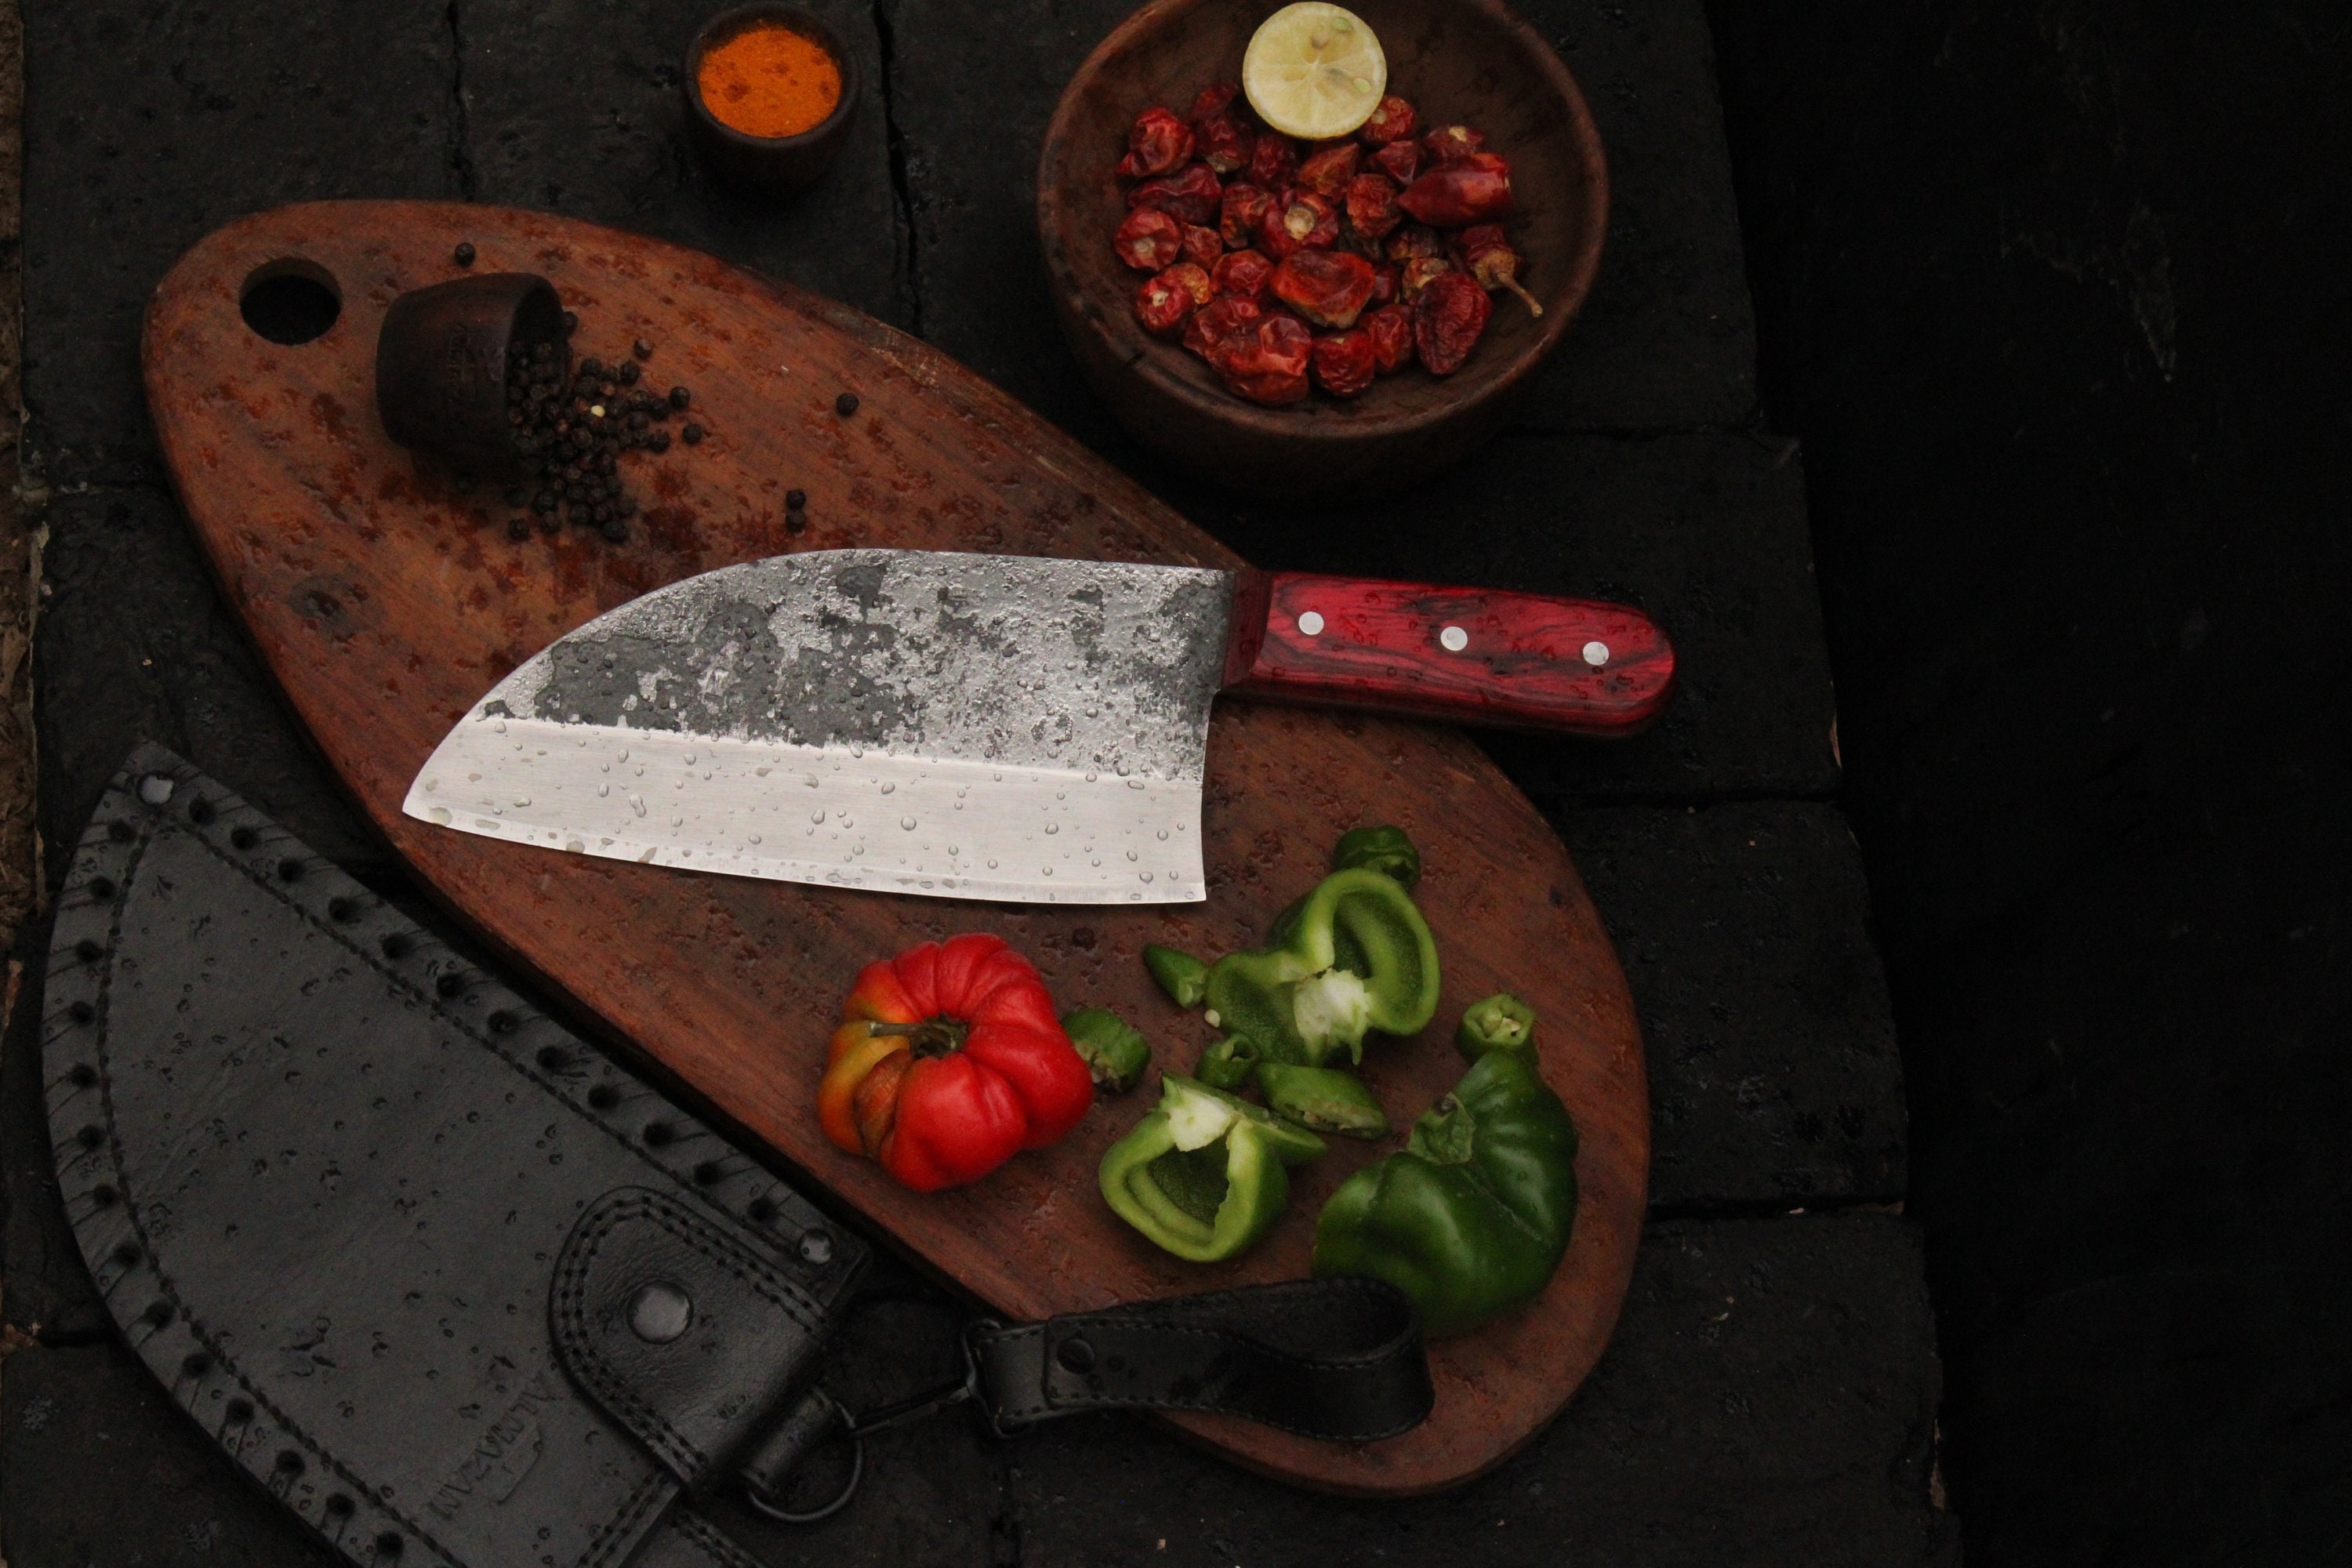 Vintage Gentlemen - Handforged Serbian Chef Knife – Grillworks